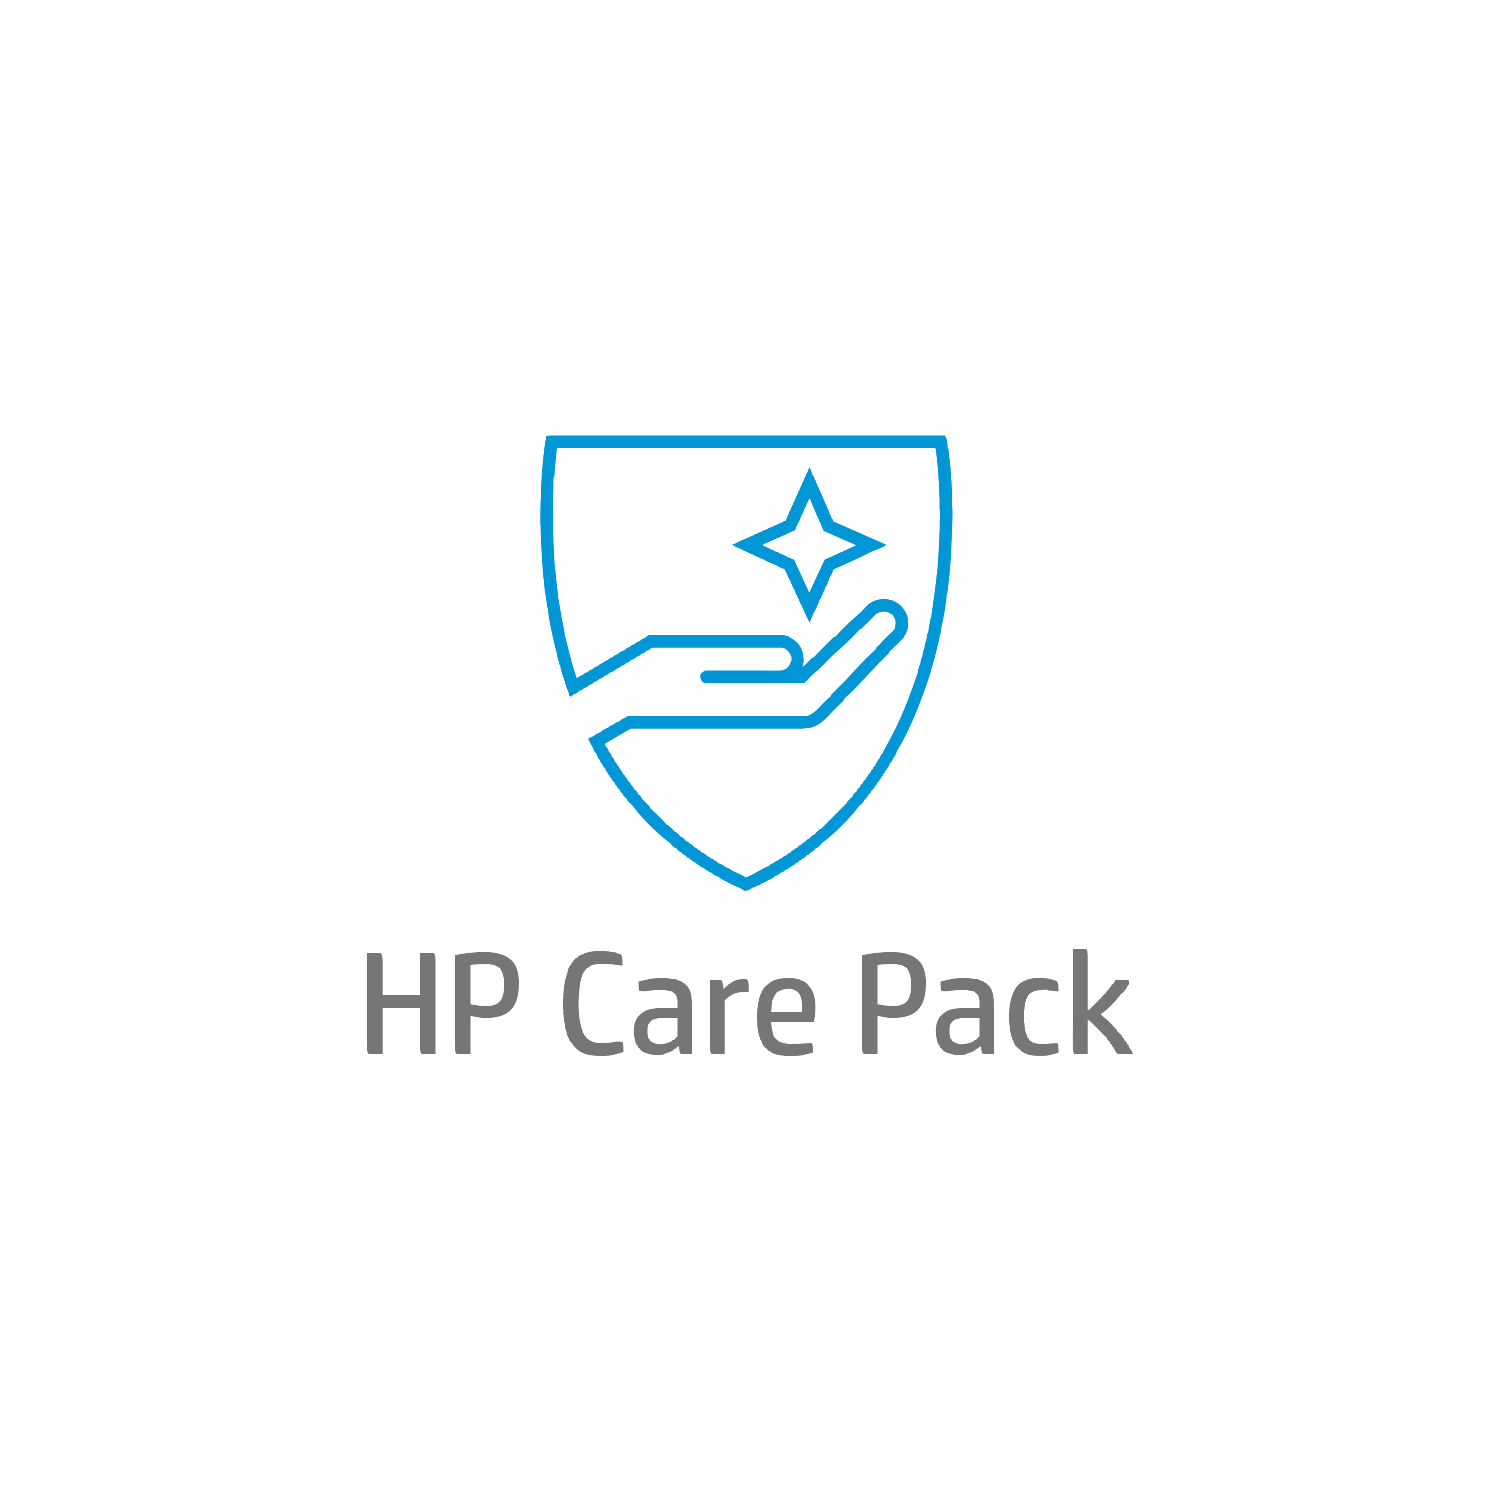 Bild von HP Care 5 Jahre Hardware-Support für Mobile Workstations - Externe Reparatur - Außerhalb des Kundenstandorts - Unter Garantie - Standardarbeitstage - 9 Stunden - 5 Jahre - Reparatur innerhalb von 3–7 Werktagen